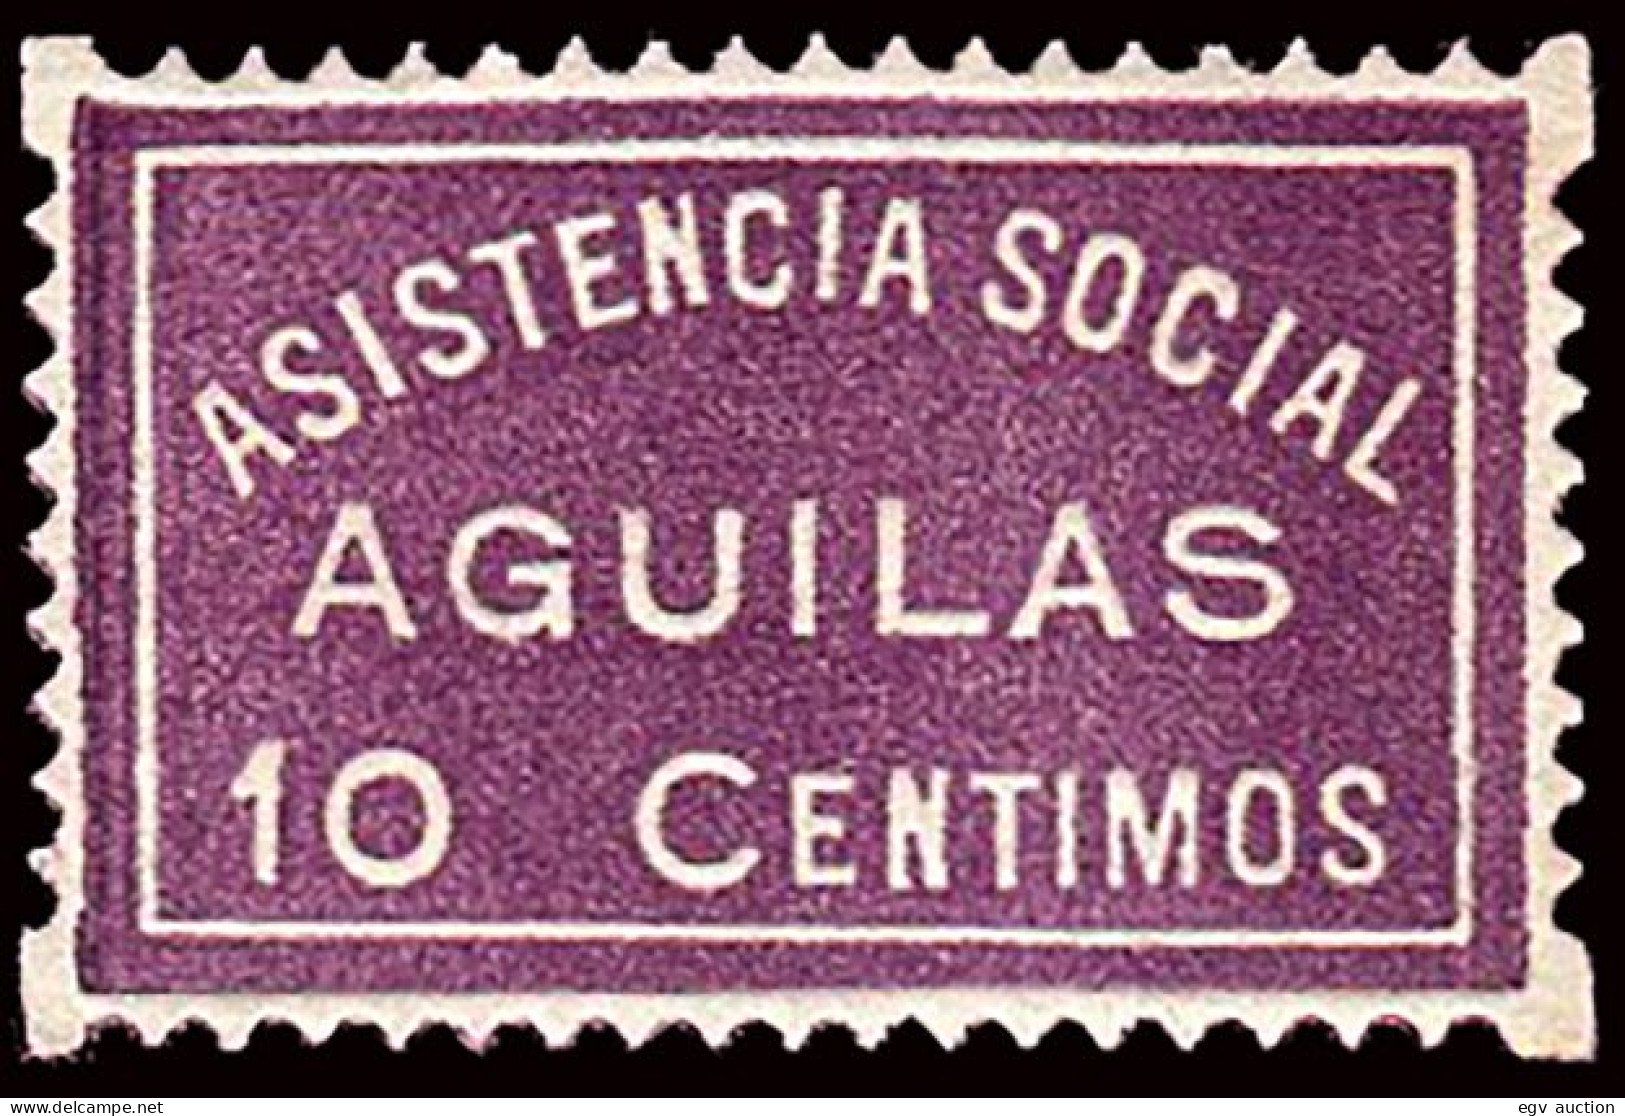 Murcia - Guerra Civil - Em. Local Republicana - Águilas - Allepuz ** 2 " 10cts. Asistencia Social" - Viñetas De La Guerra Civil